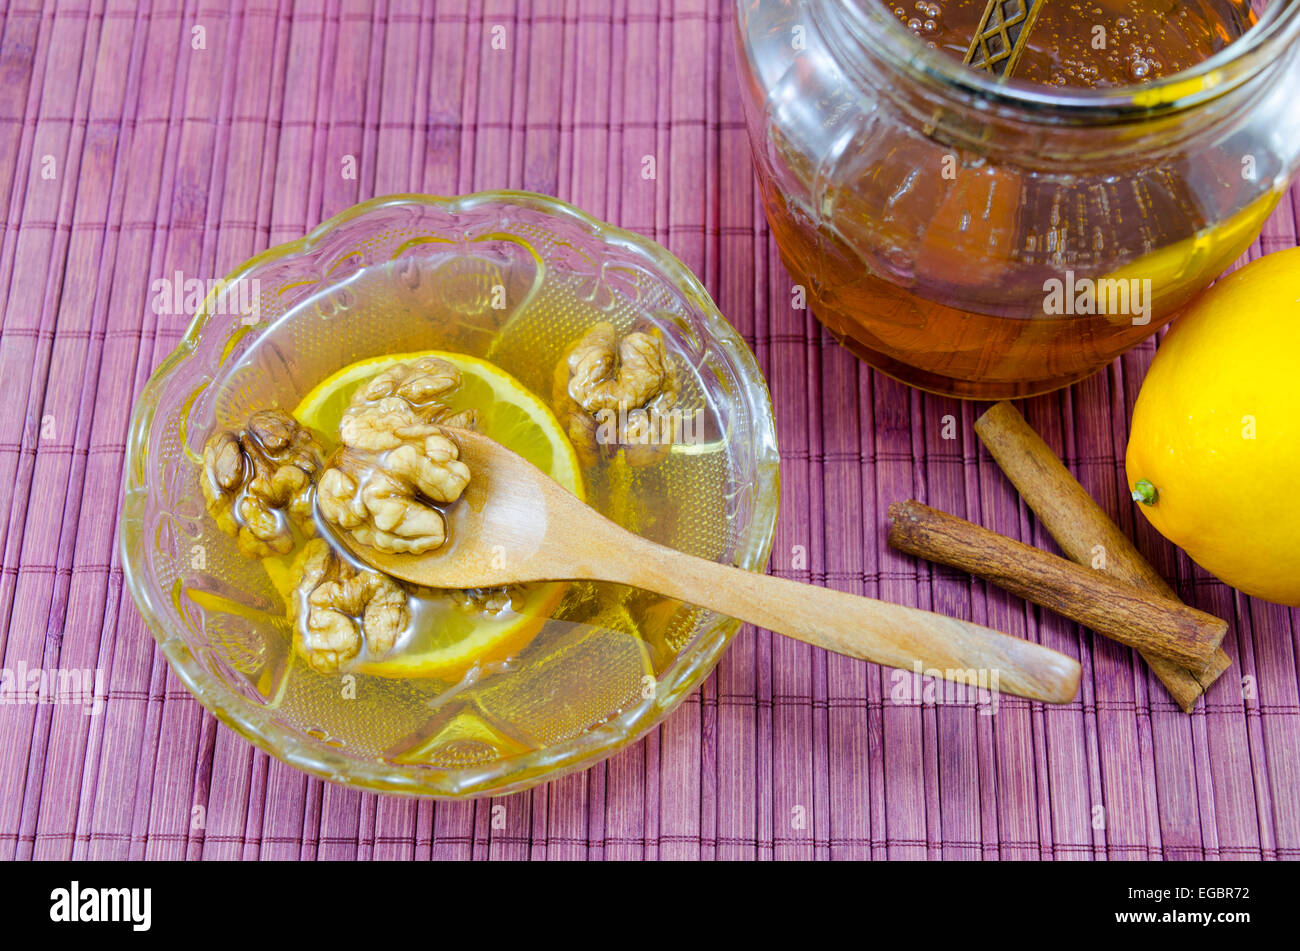 Walnüsse, Honig und Zimt in einem Glas auf einem Holztisch Stockfoto